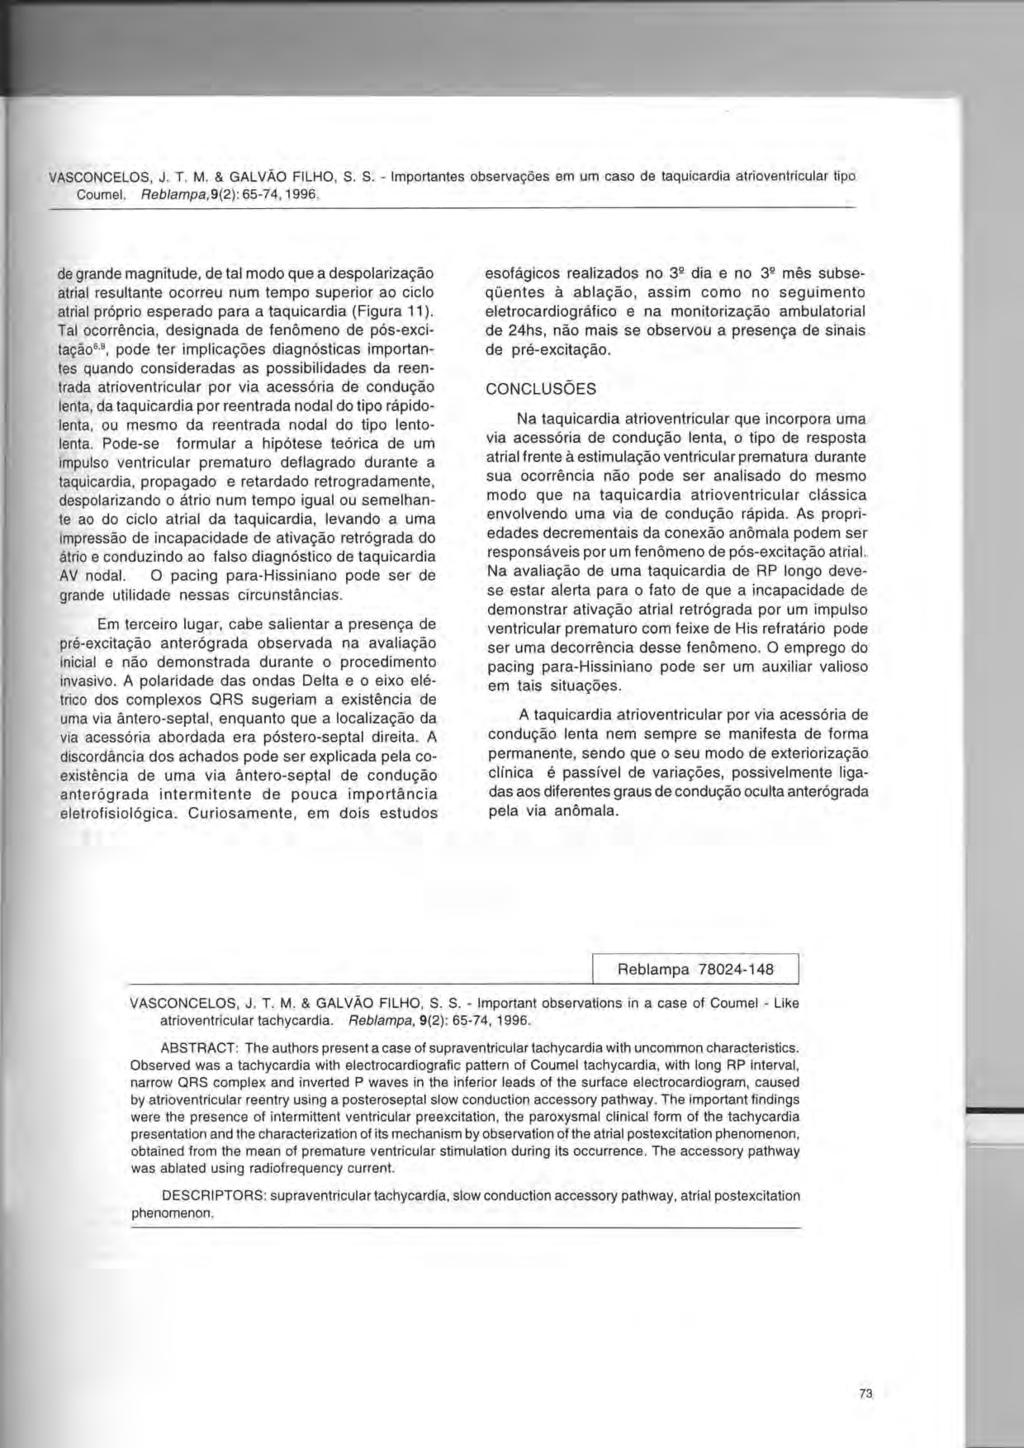 VASCONCELOS, J. T. M. & GALVAO FILHO, S. S. - Importantes observac;:6es em um caso de taquicardia atrioventricular tipo Coumel. Reb/ampa,9(2): 65-74,1996.